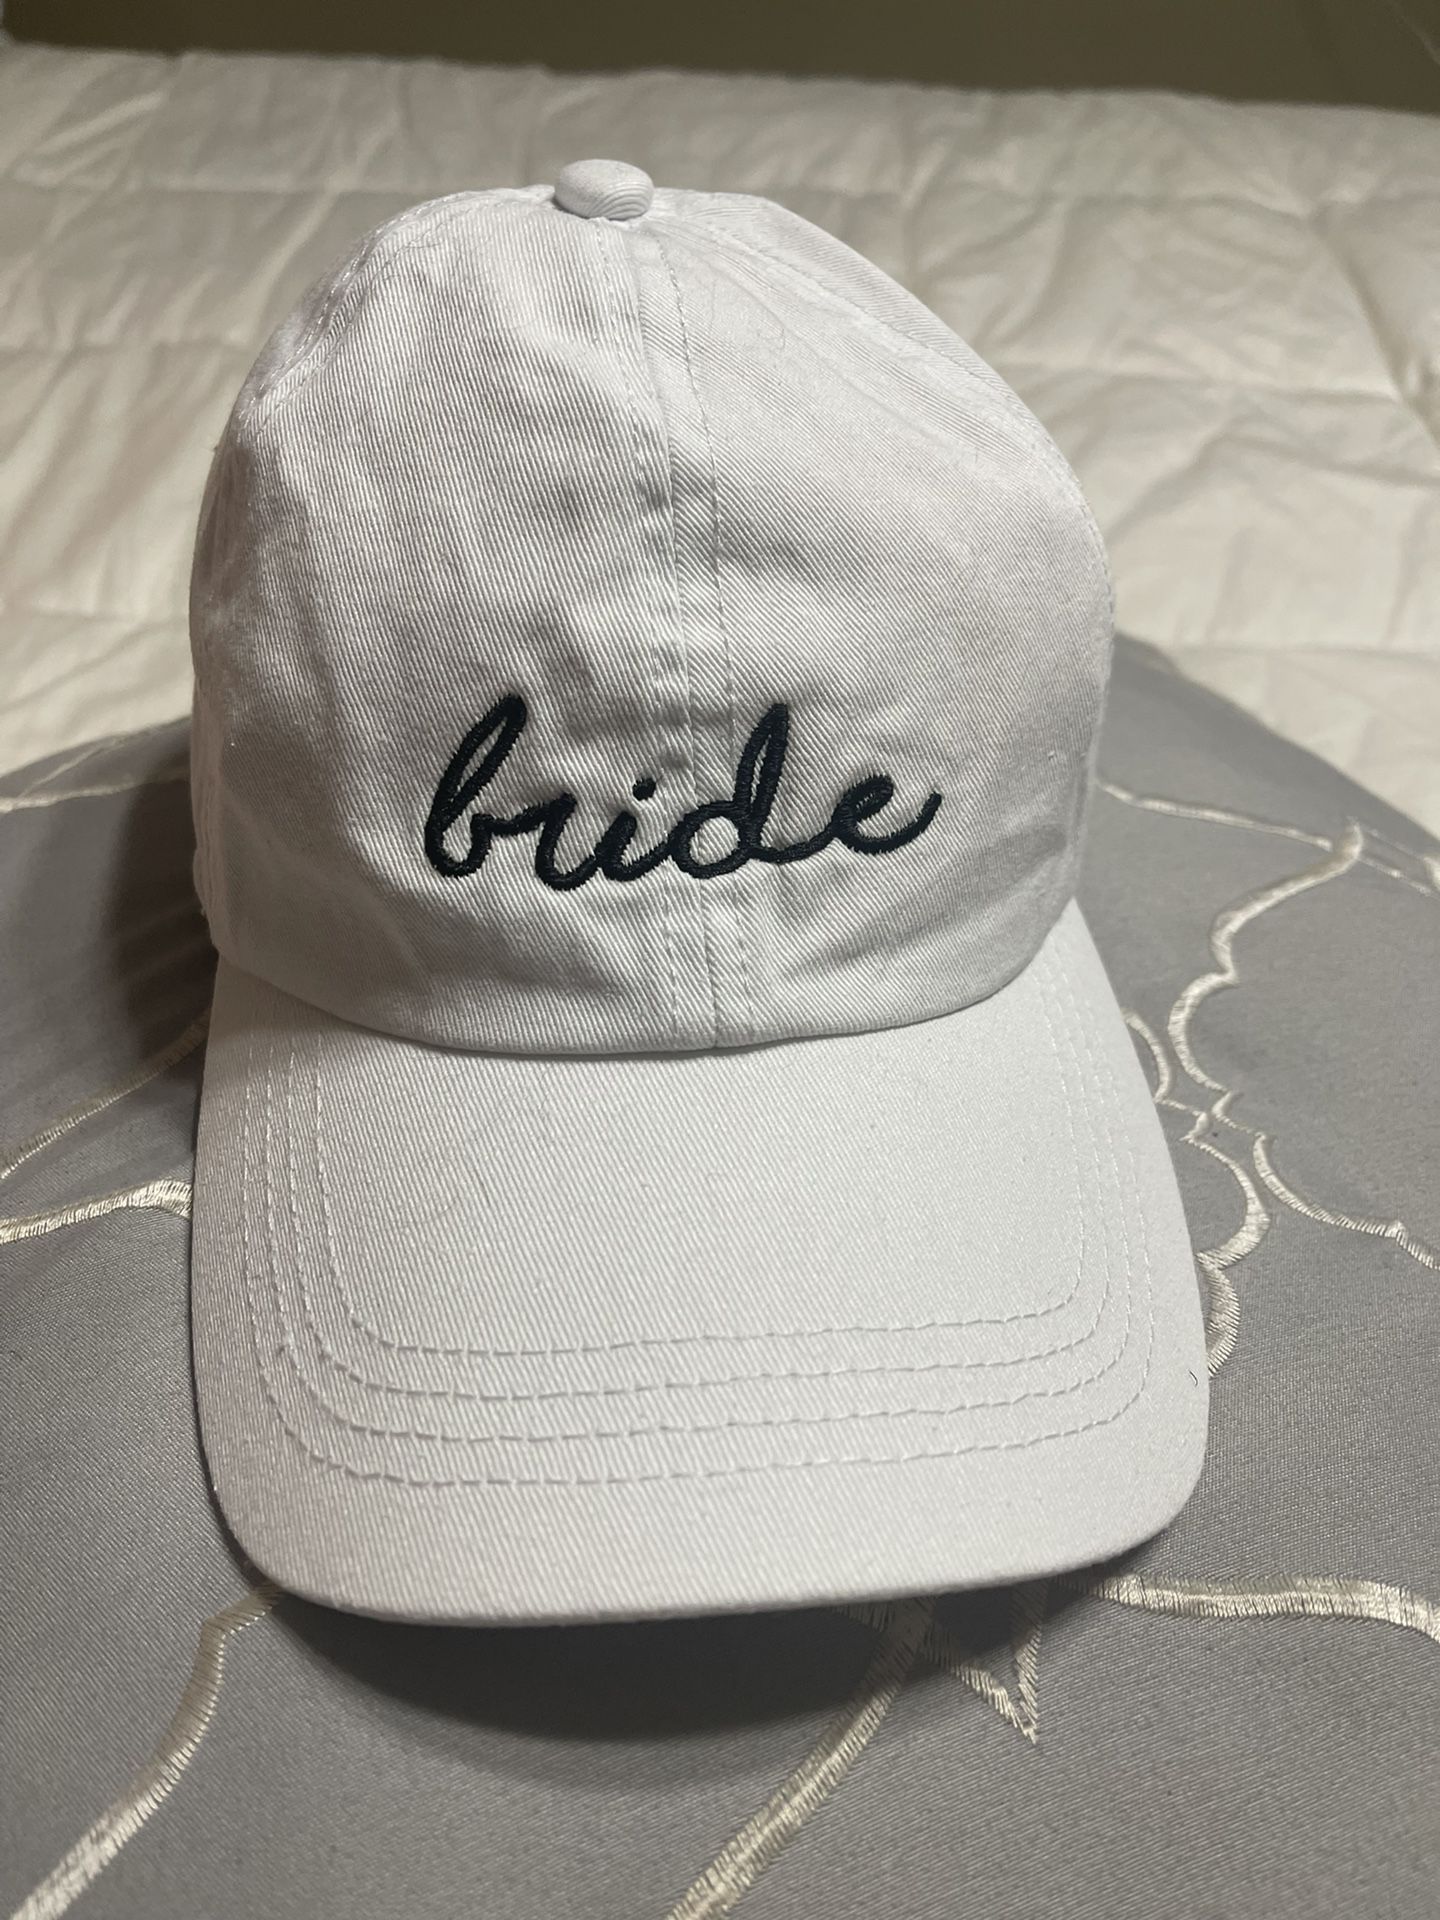 Bride Hat 